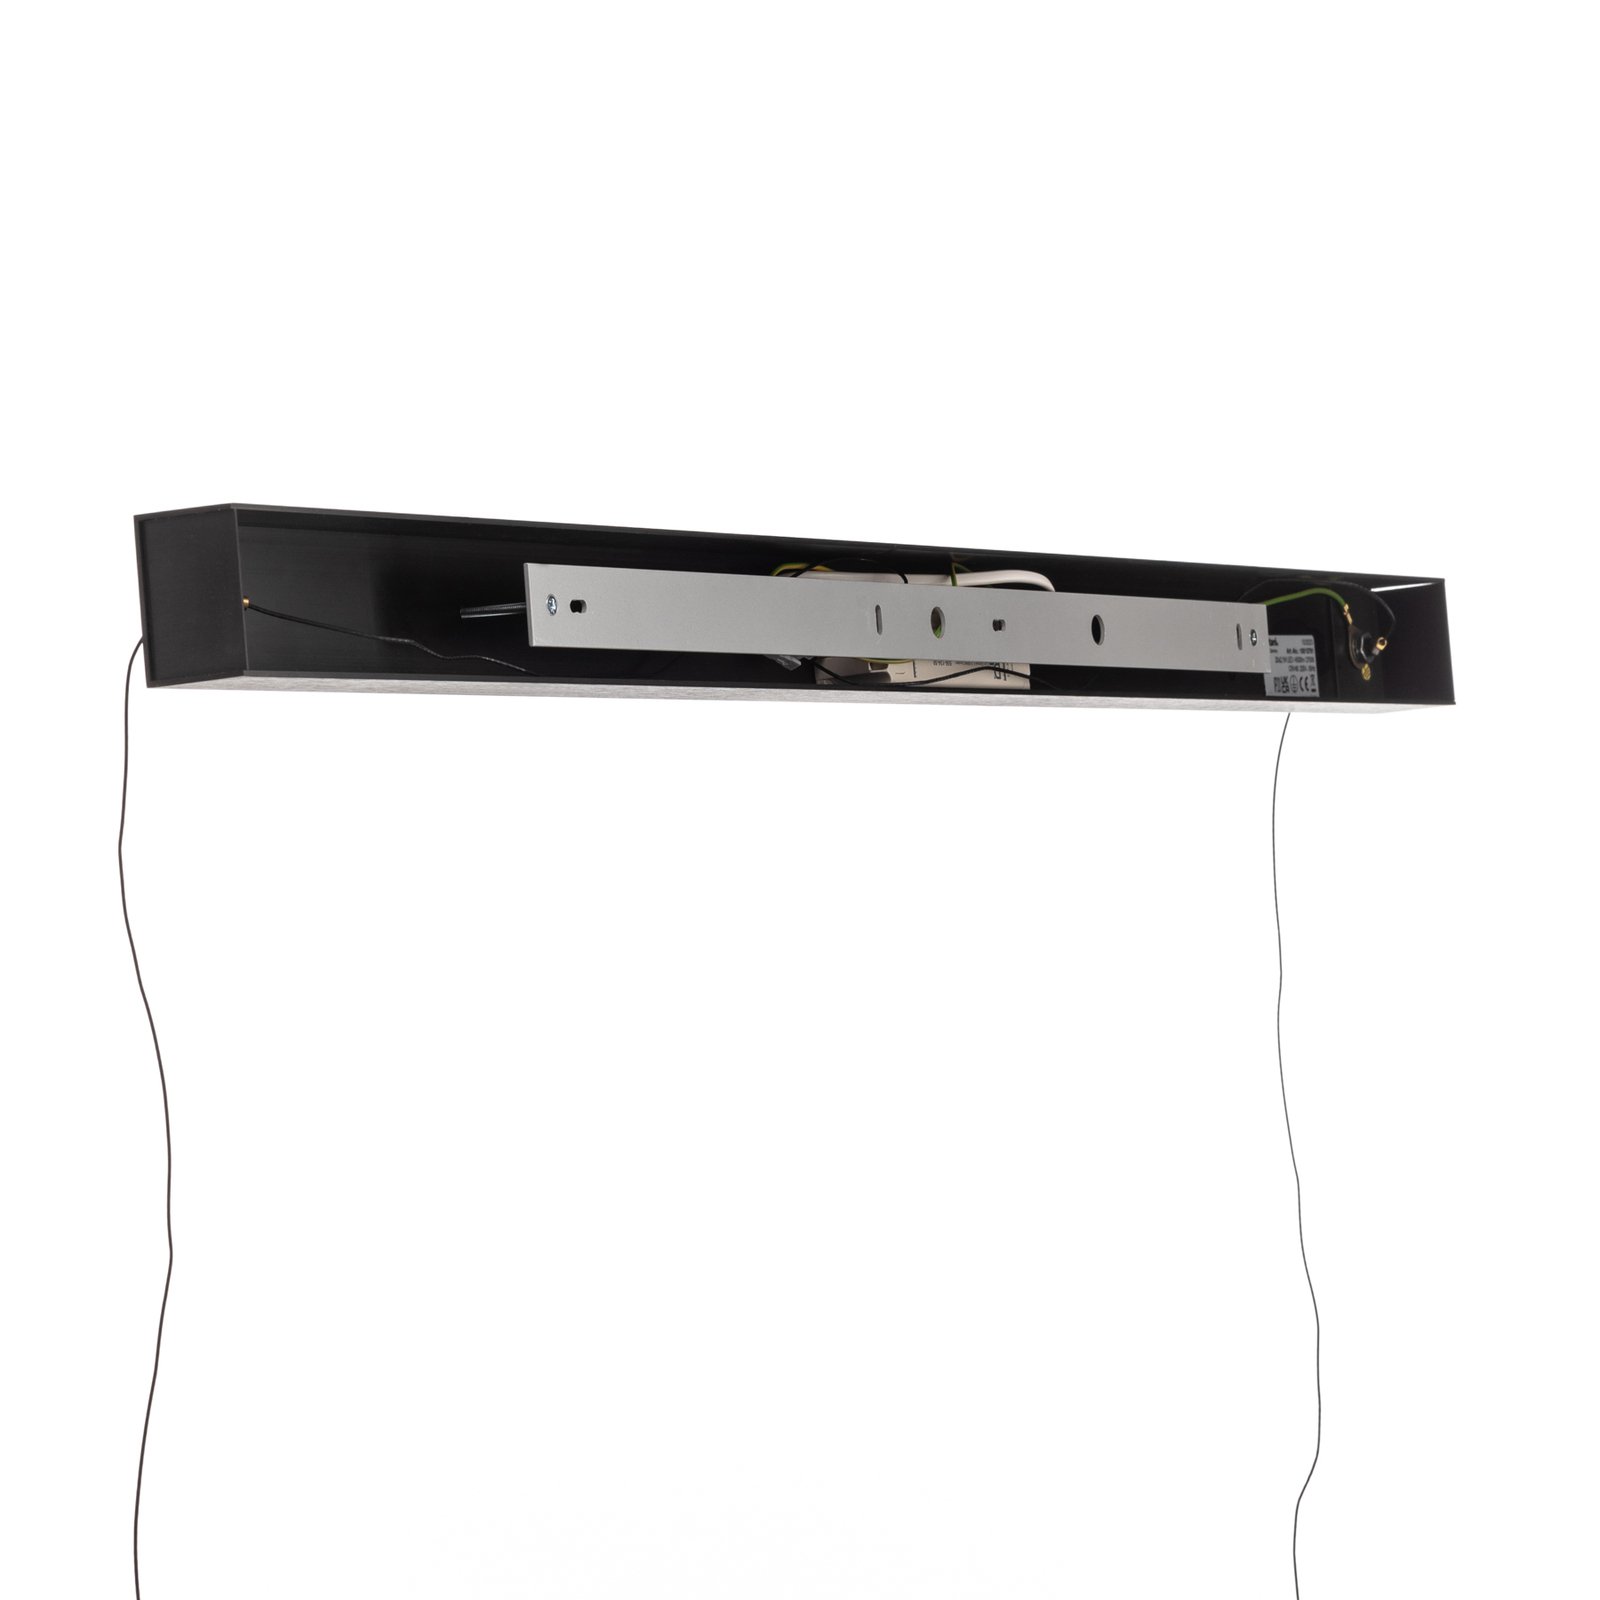 Quitani Lysia LED függő, oxidált/fekete, 118 cm